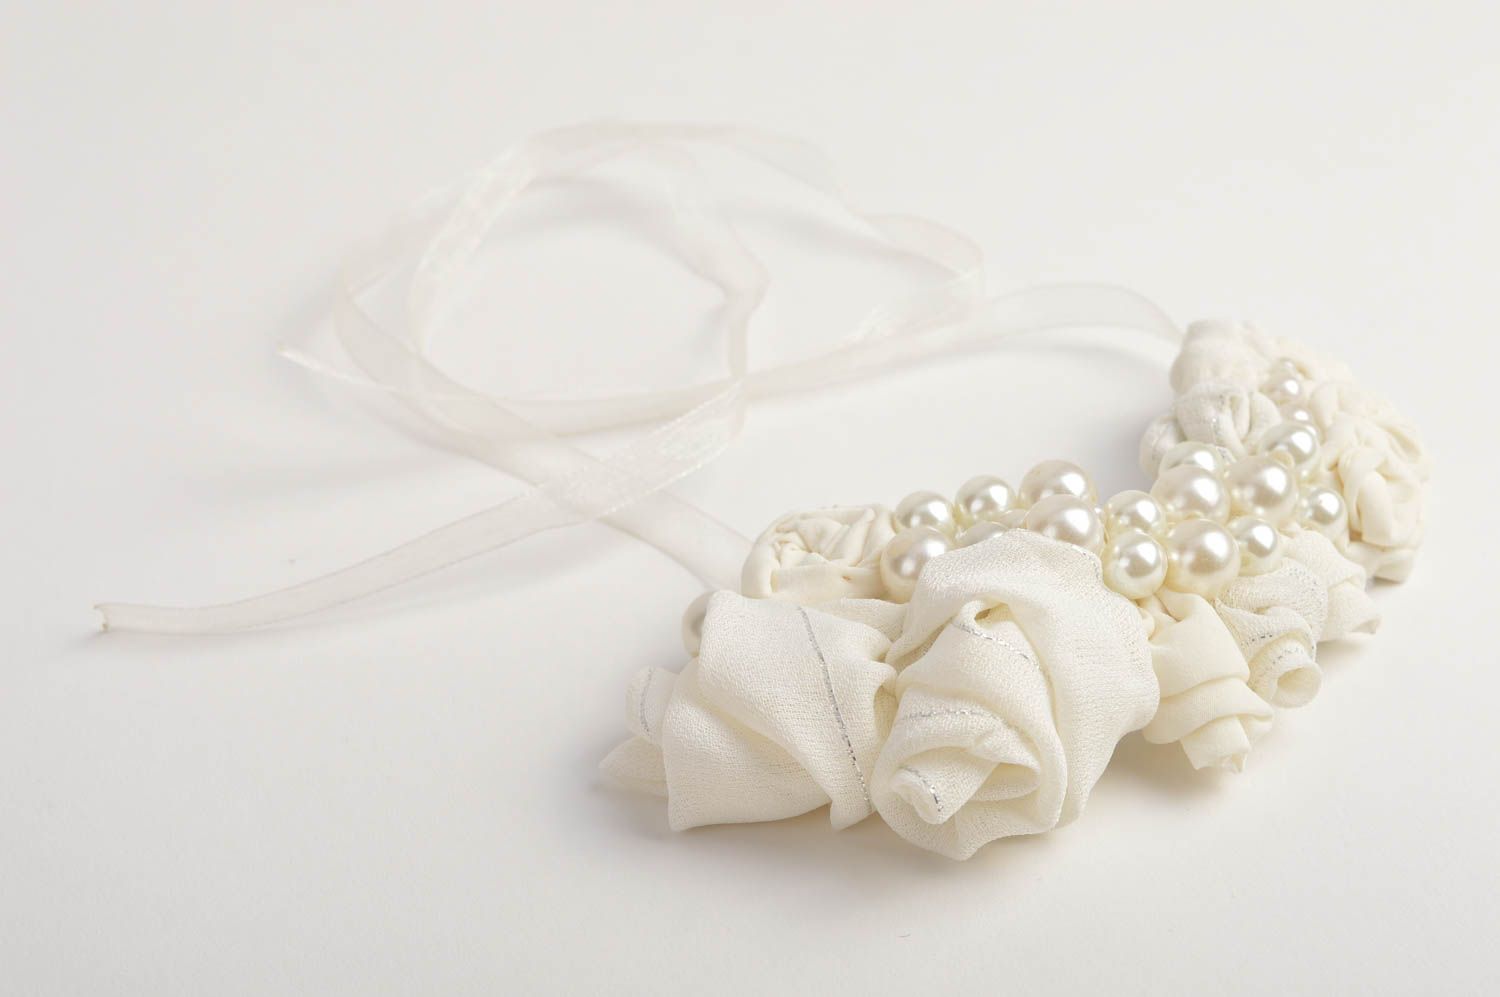 Handmade white festive jewelry stylish designer necklace elegant necklace photo 4